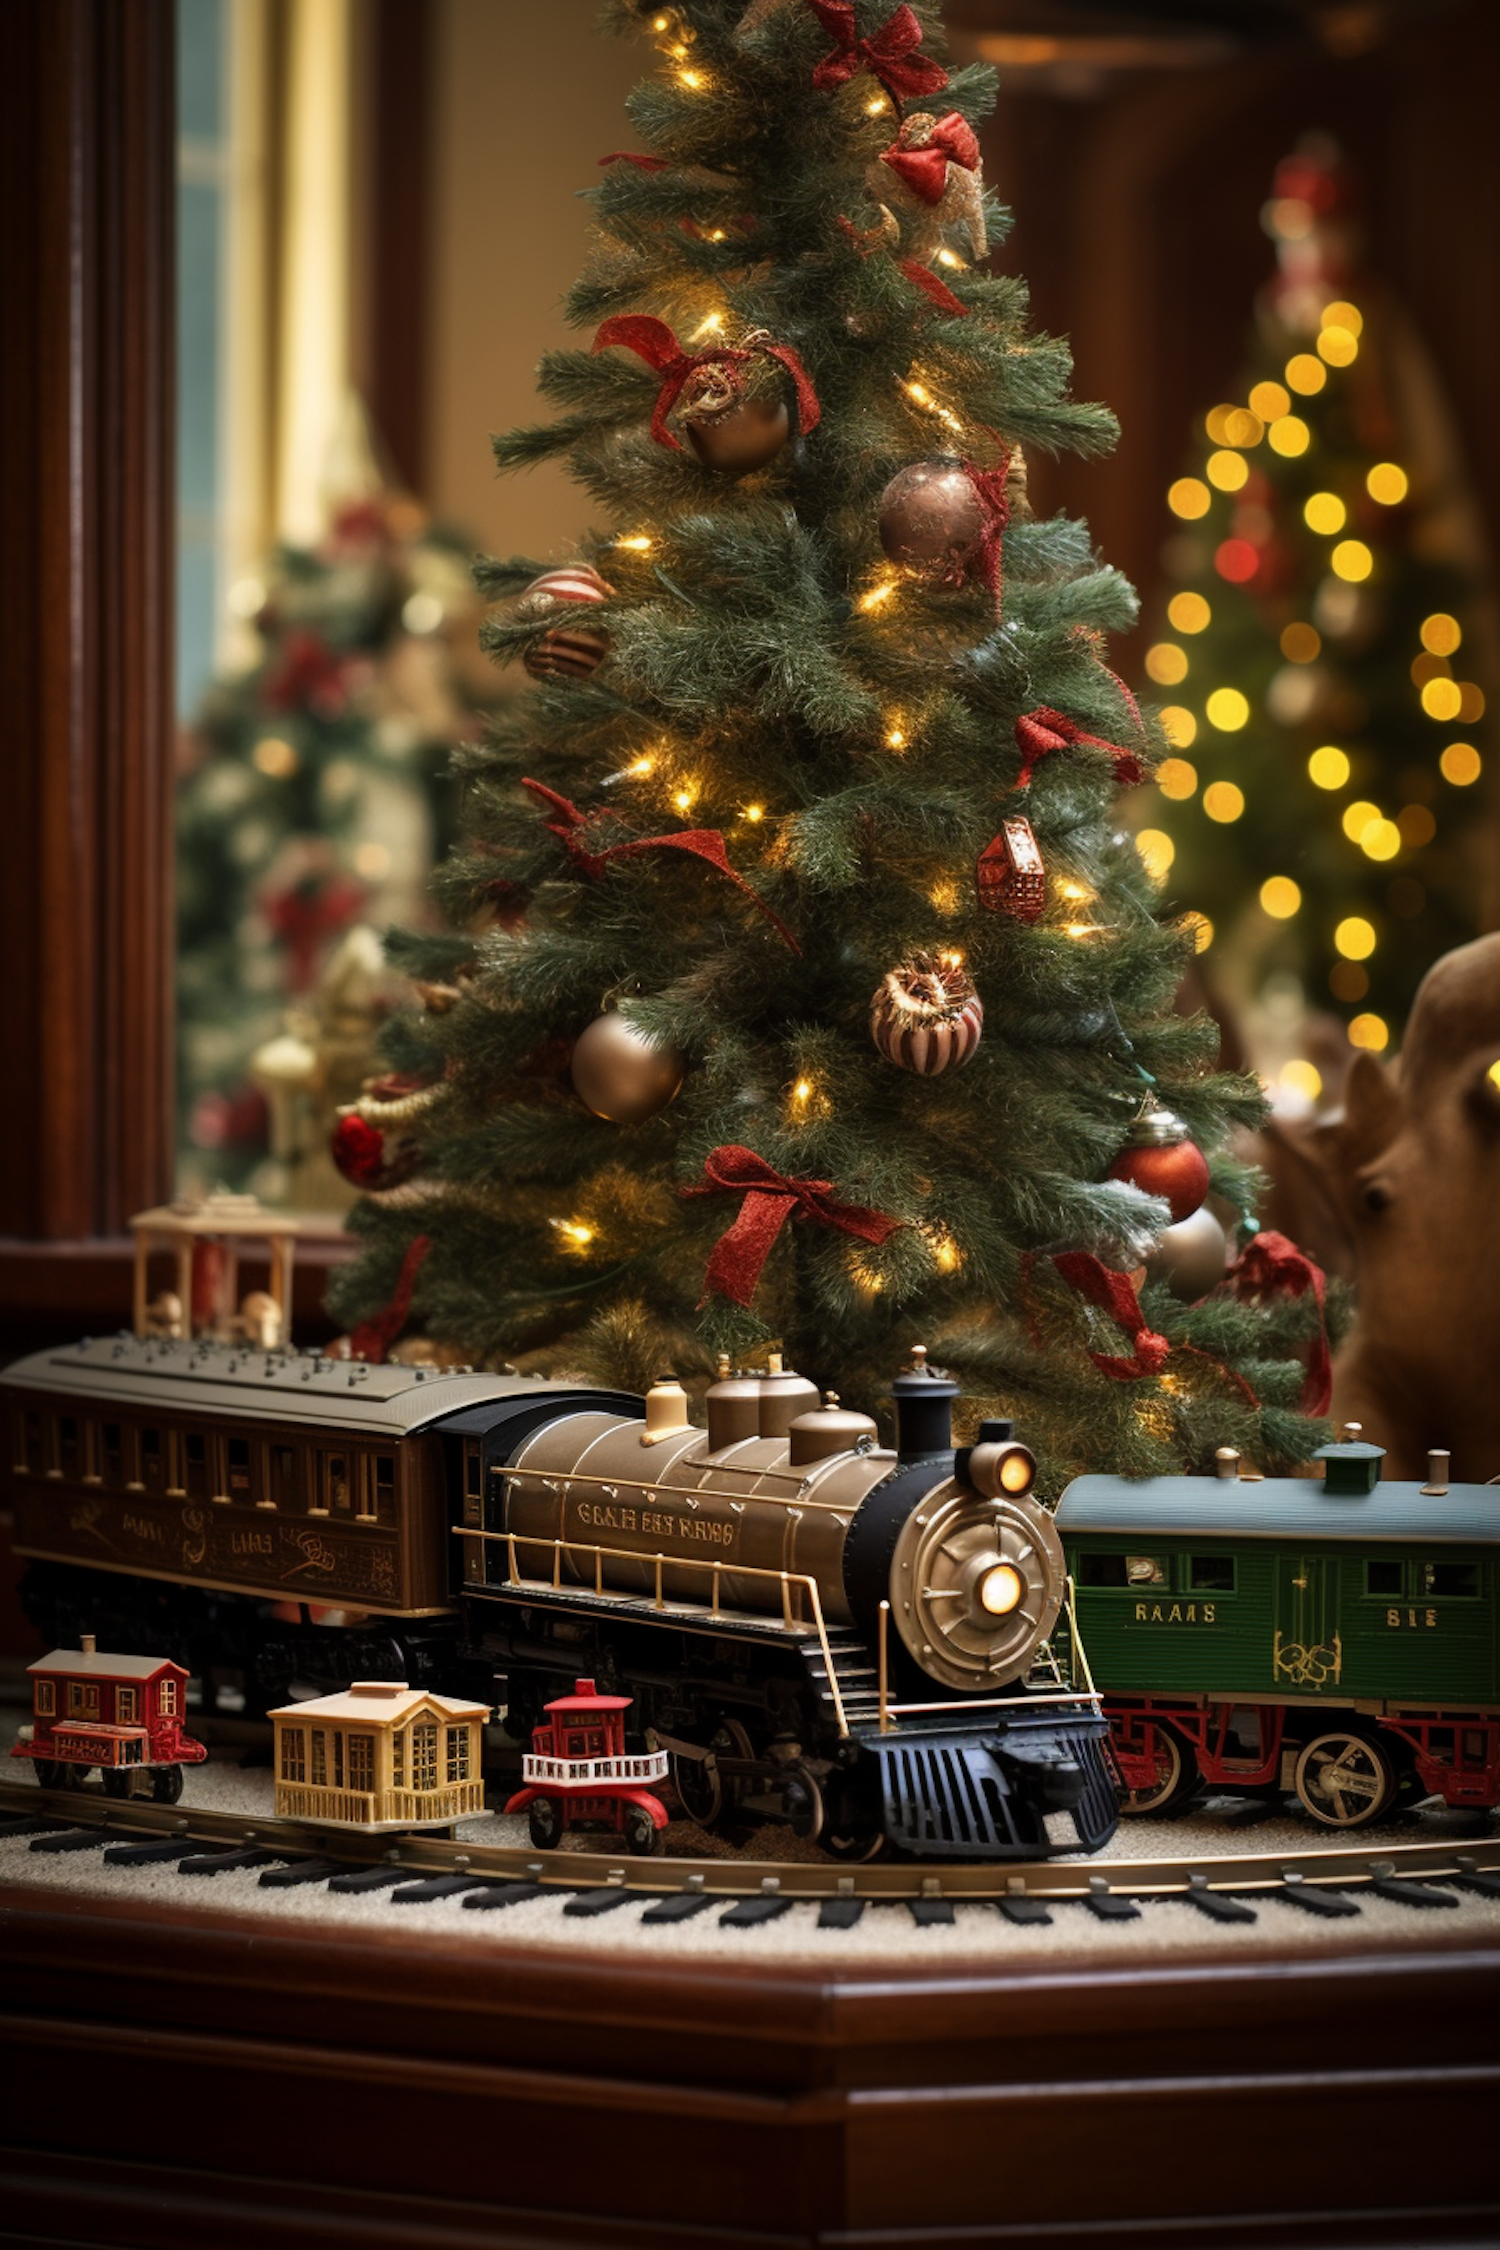 Vintage Holiday Rail & Christmas Tree Scene